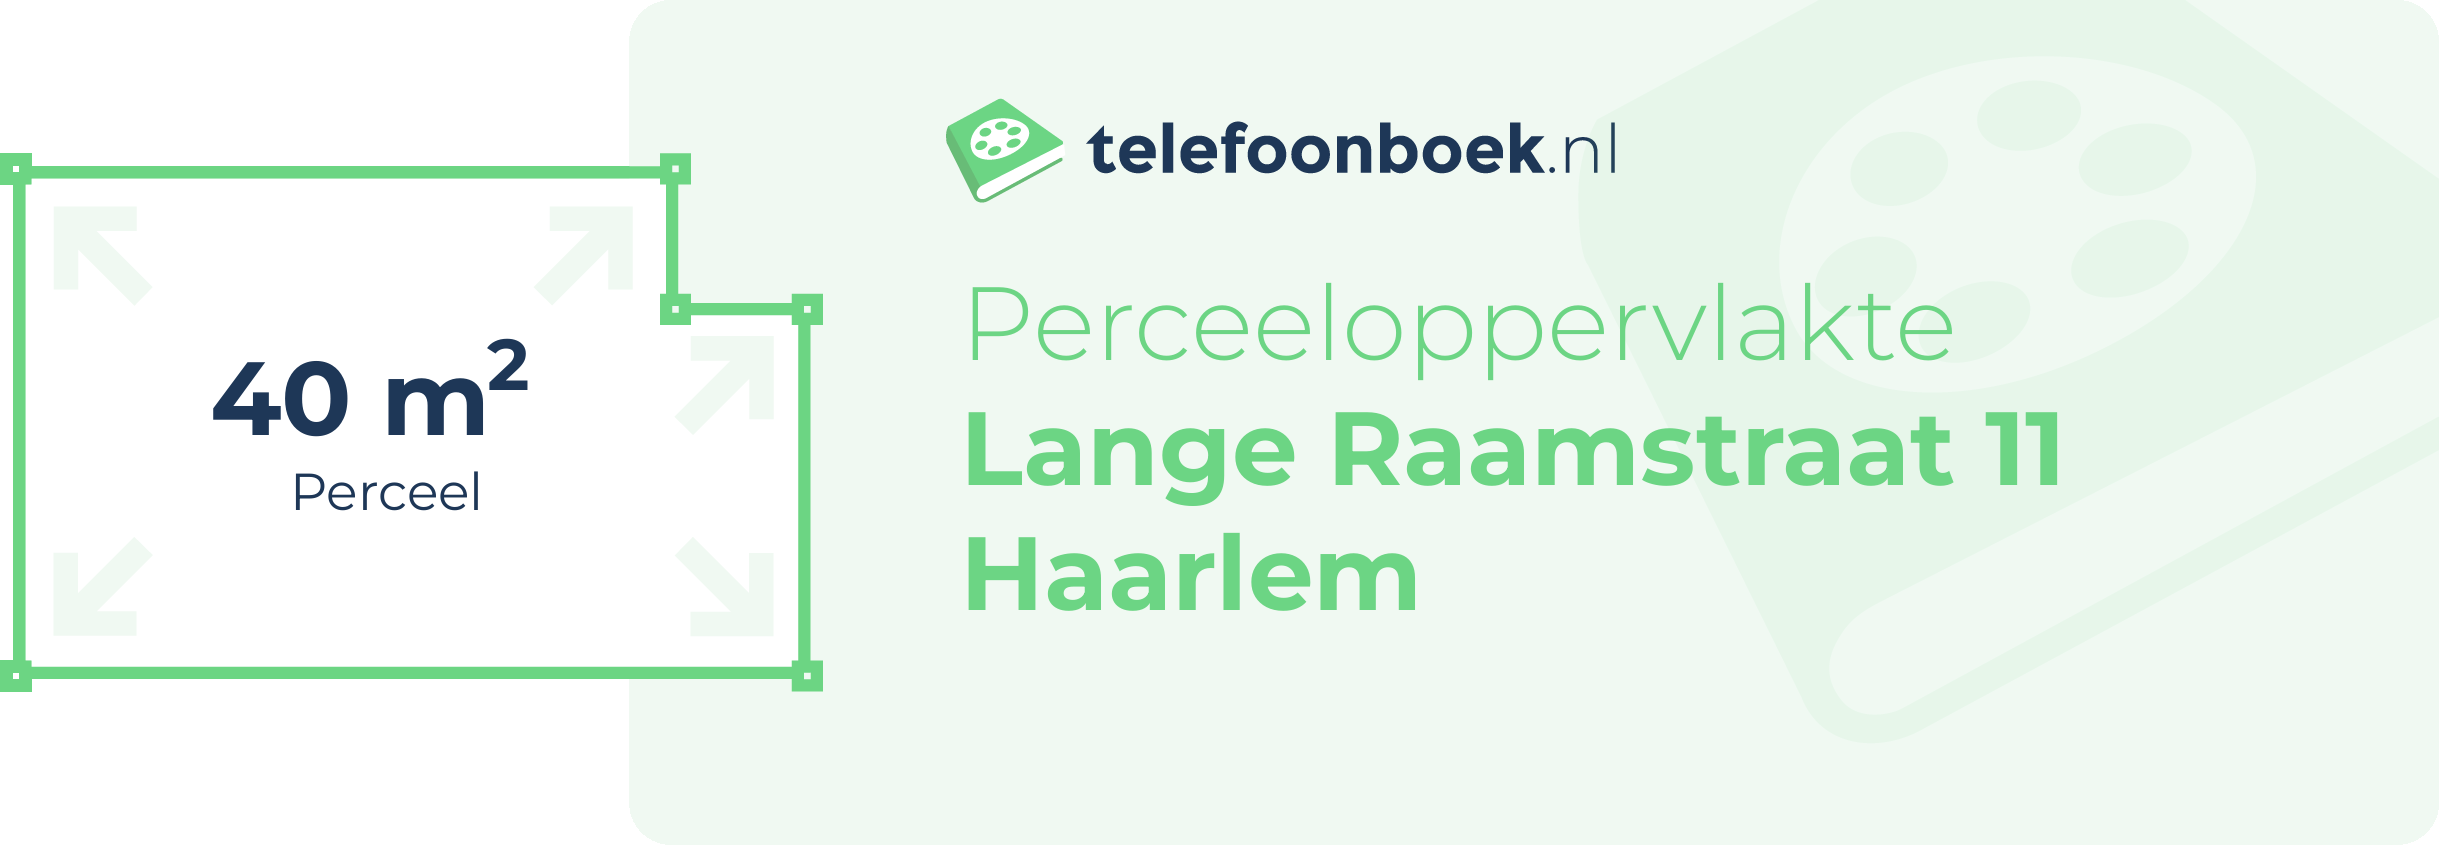 Perceeloppervlakte Lange Raamstraat 11 Haarlem